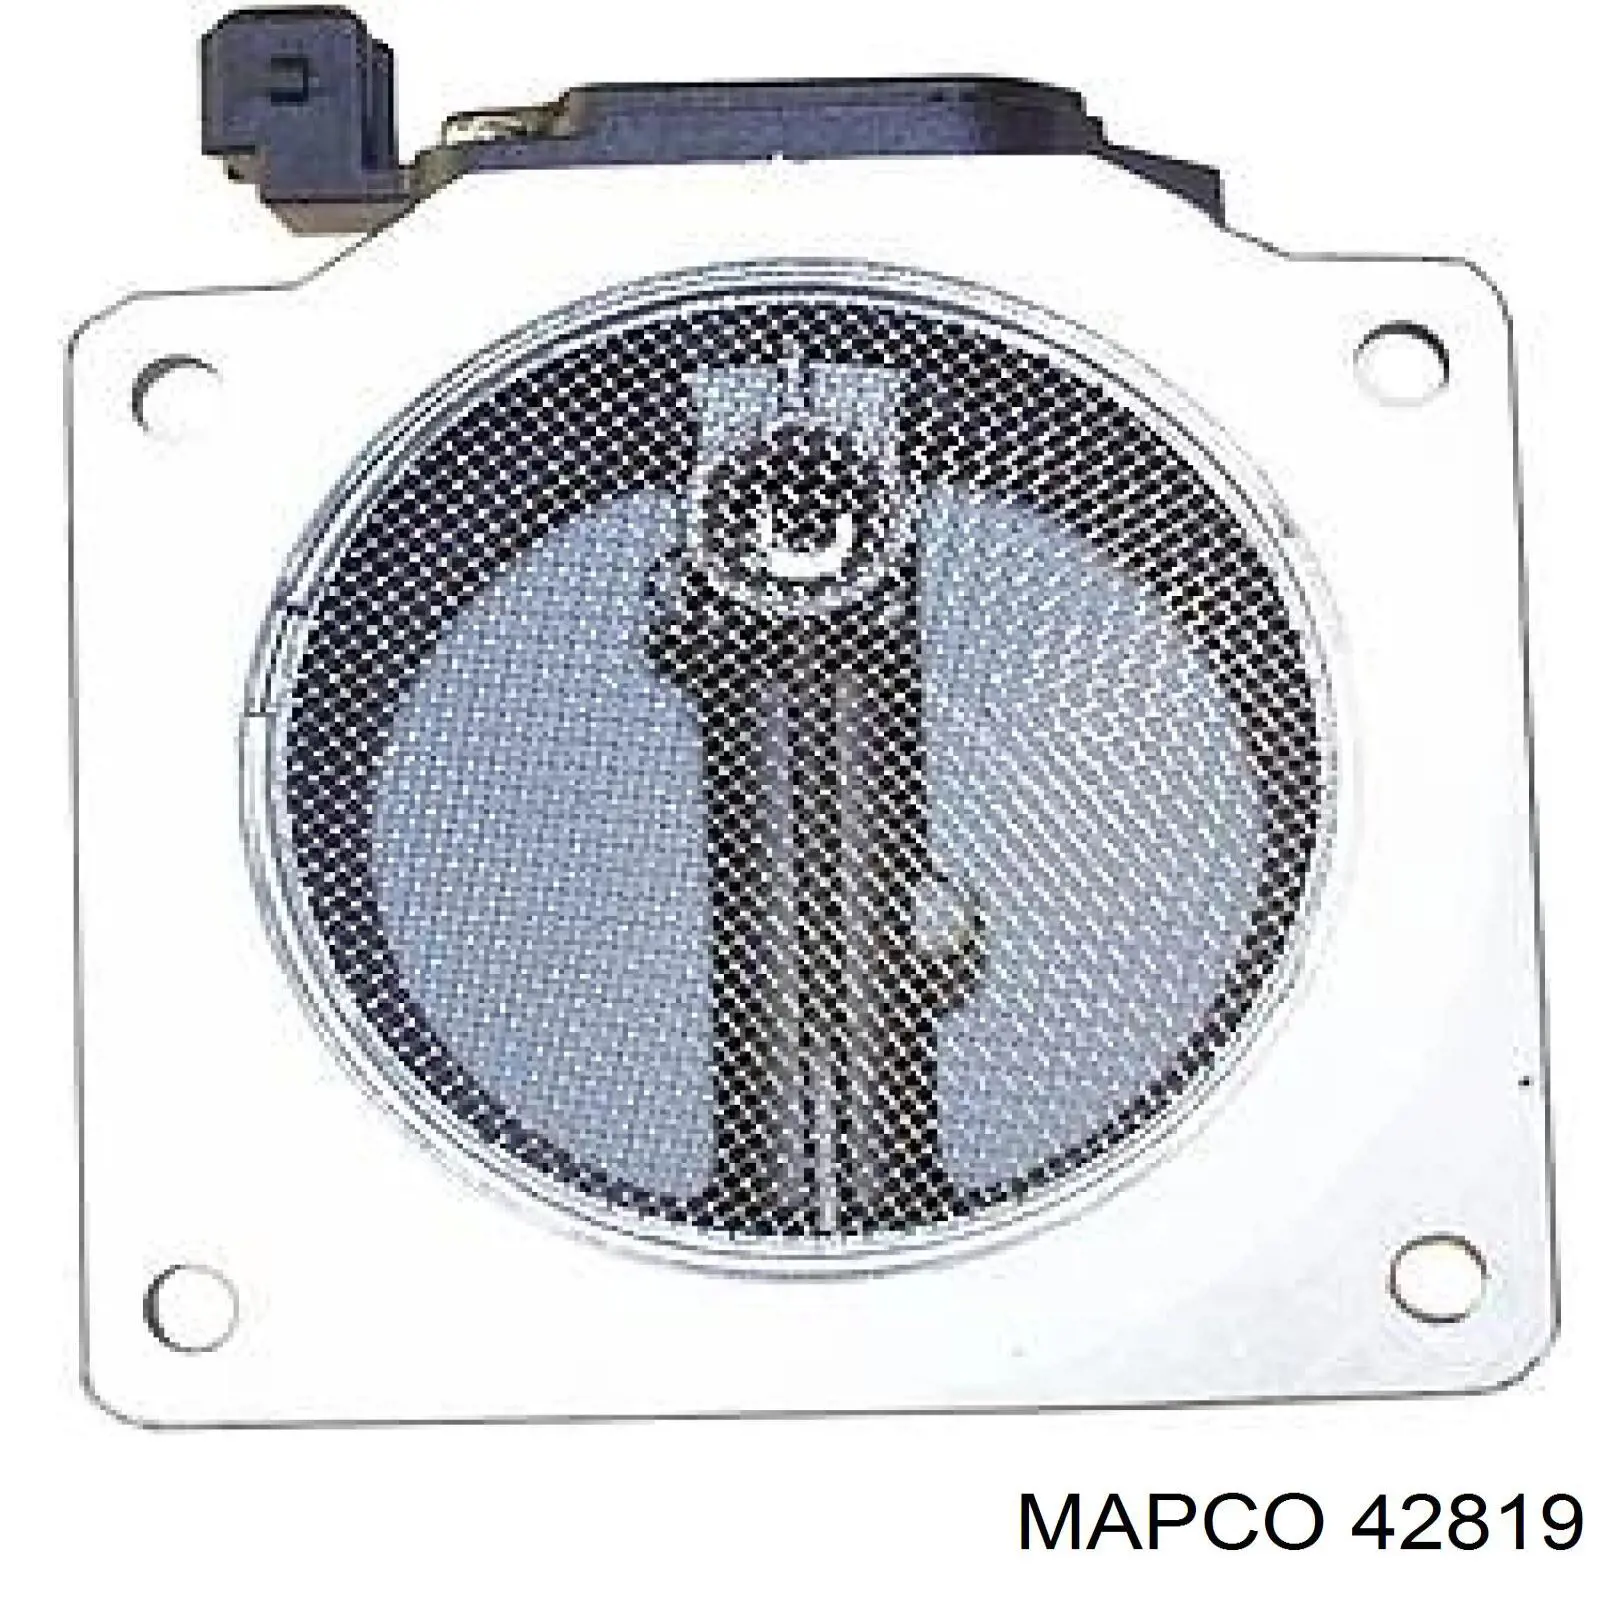 Sensor De Flujo De Aire/Medidor De Flujo (Flujo de Aire Masibo) 42819 Mapco